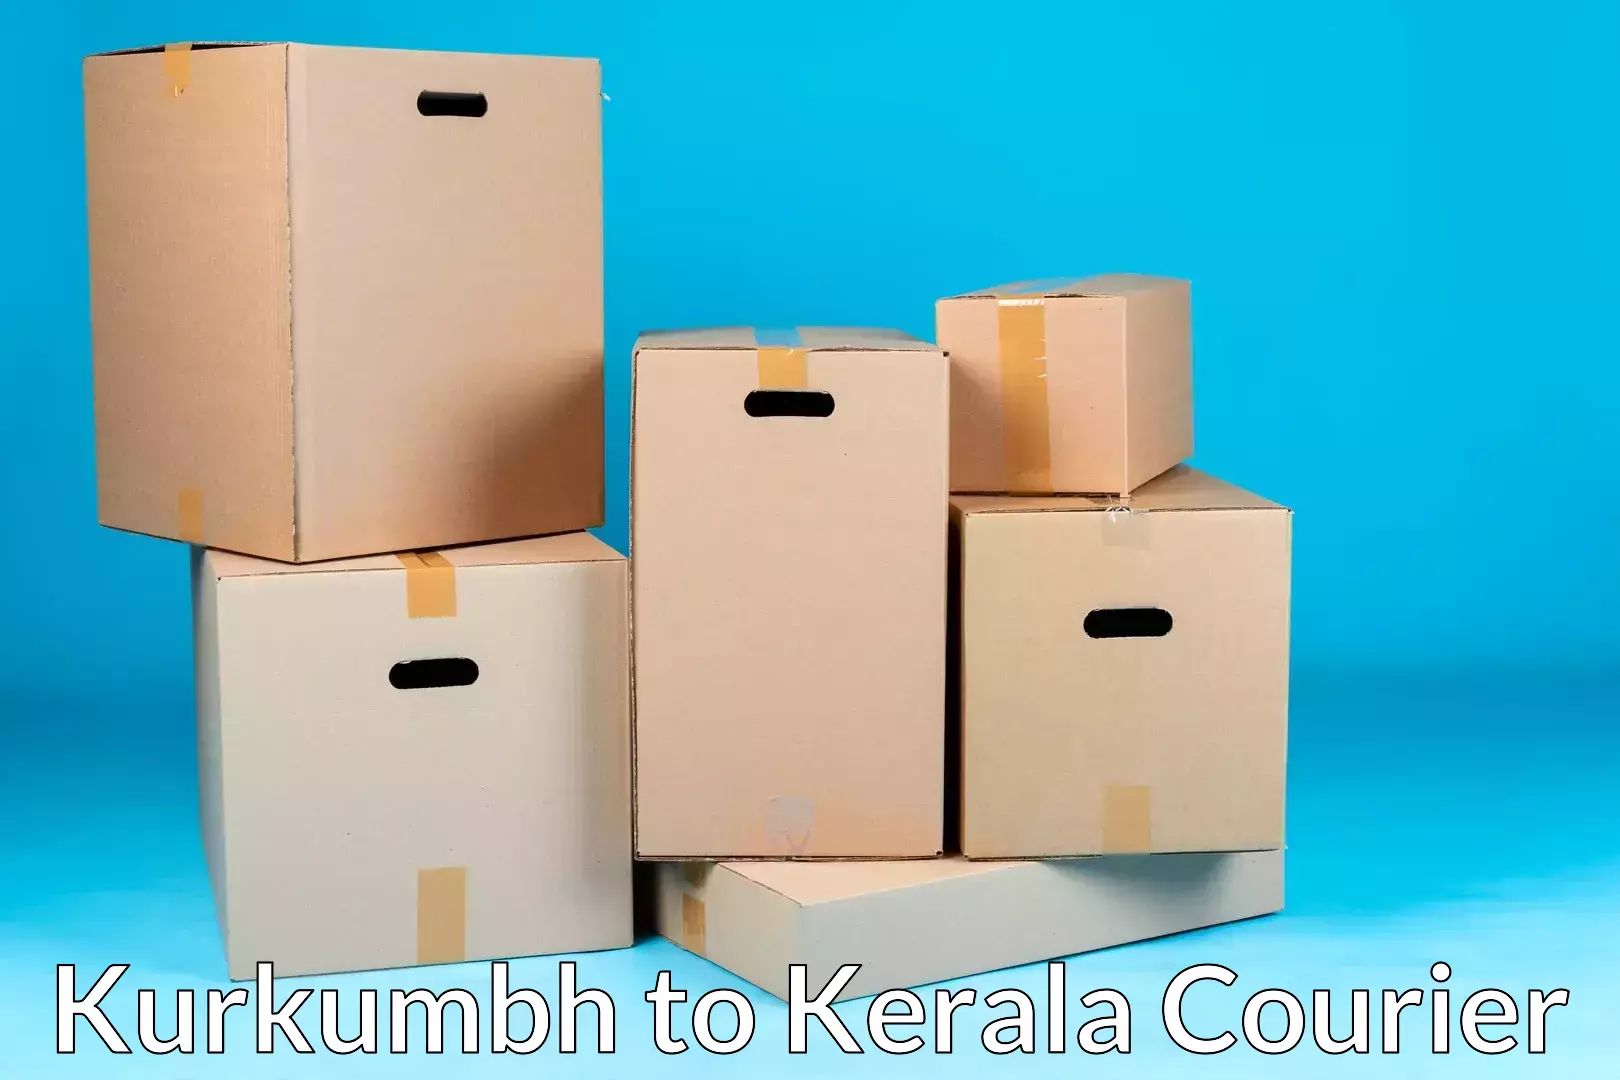 Budget-friendly movers in Kurkumbh to Kerala